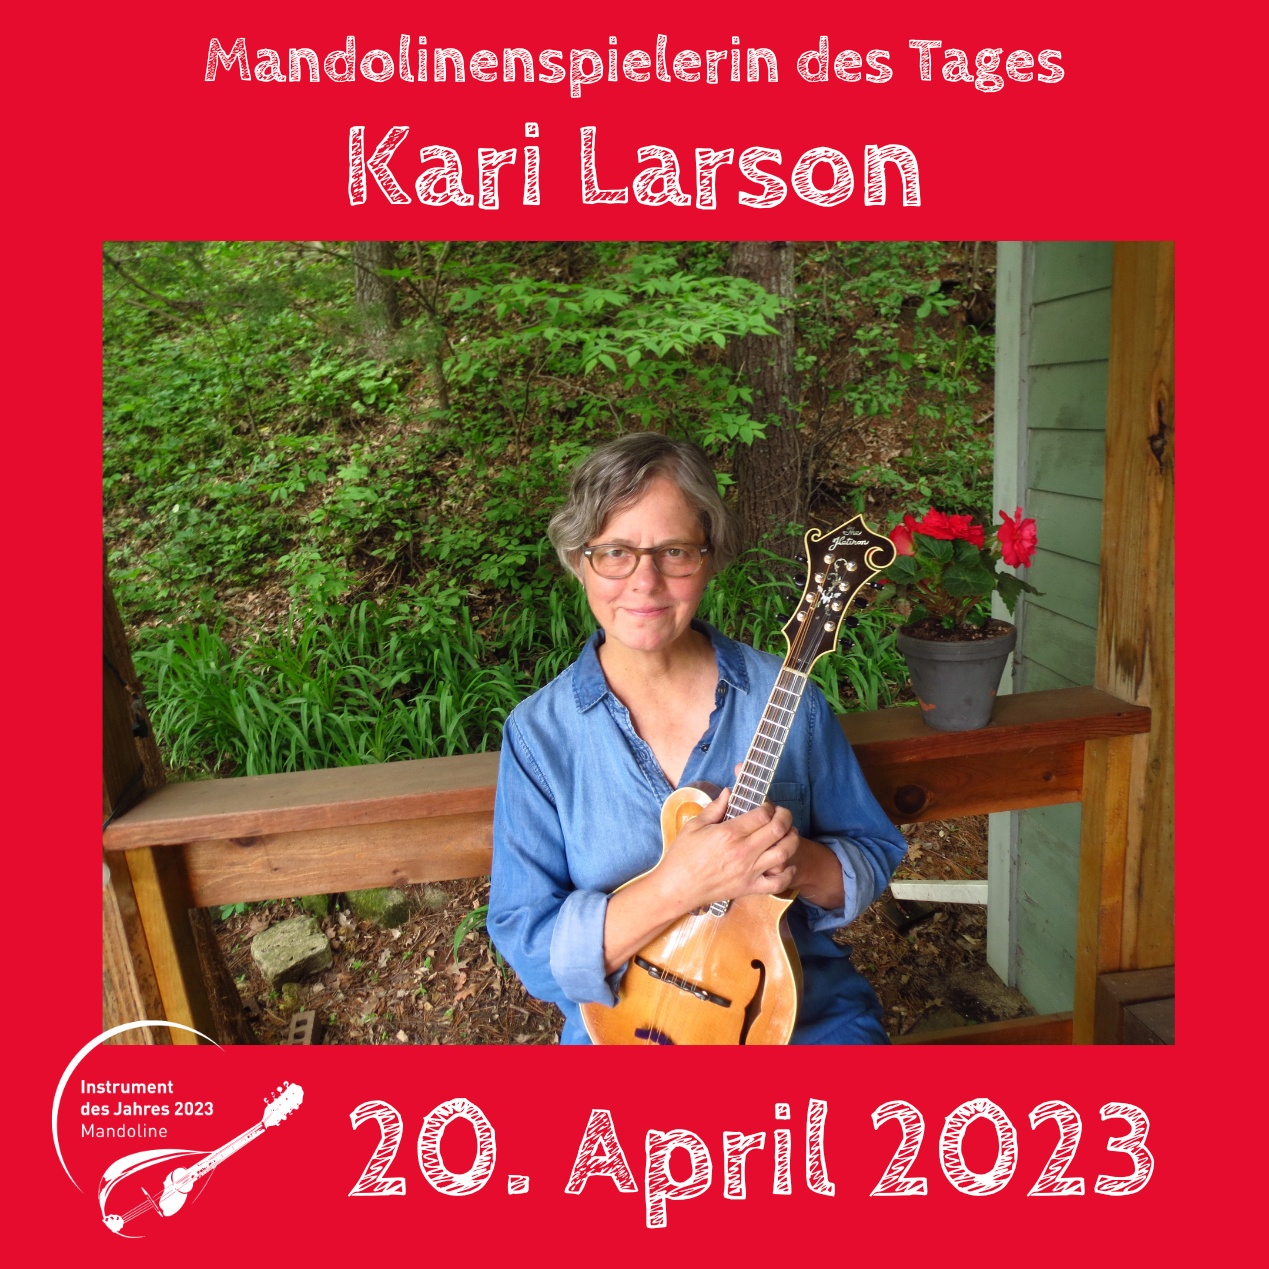 Kari Larson Instrument des Jahres 2023 Mandolinenspieler Mandolinenspielerin des Tages